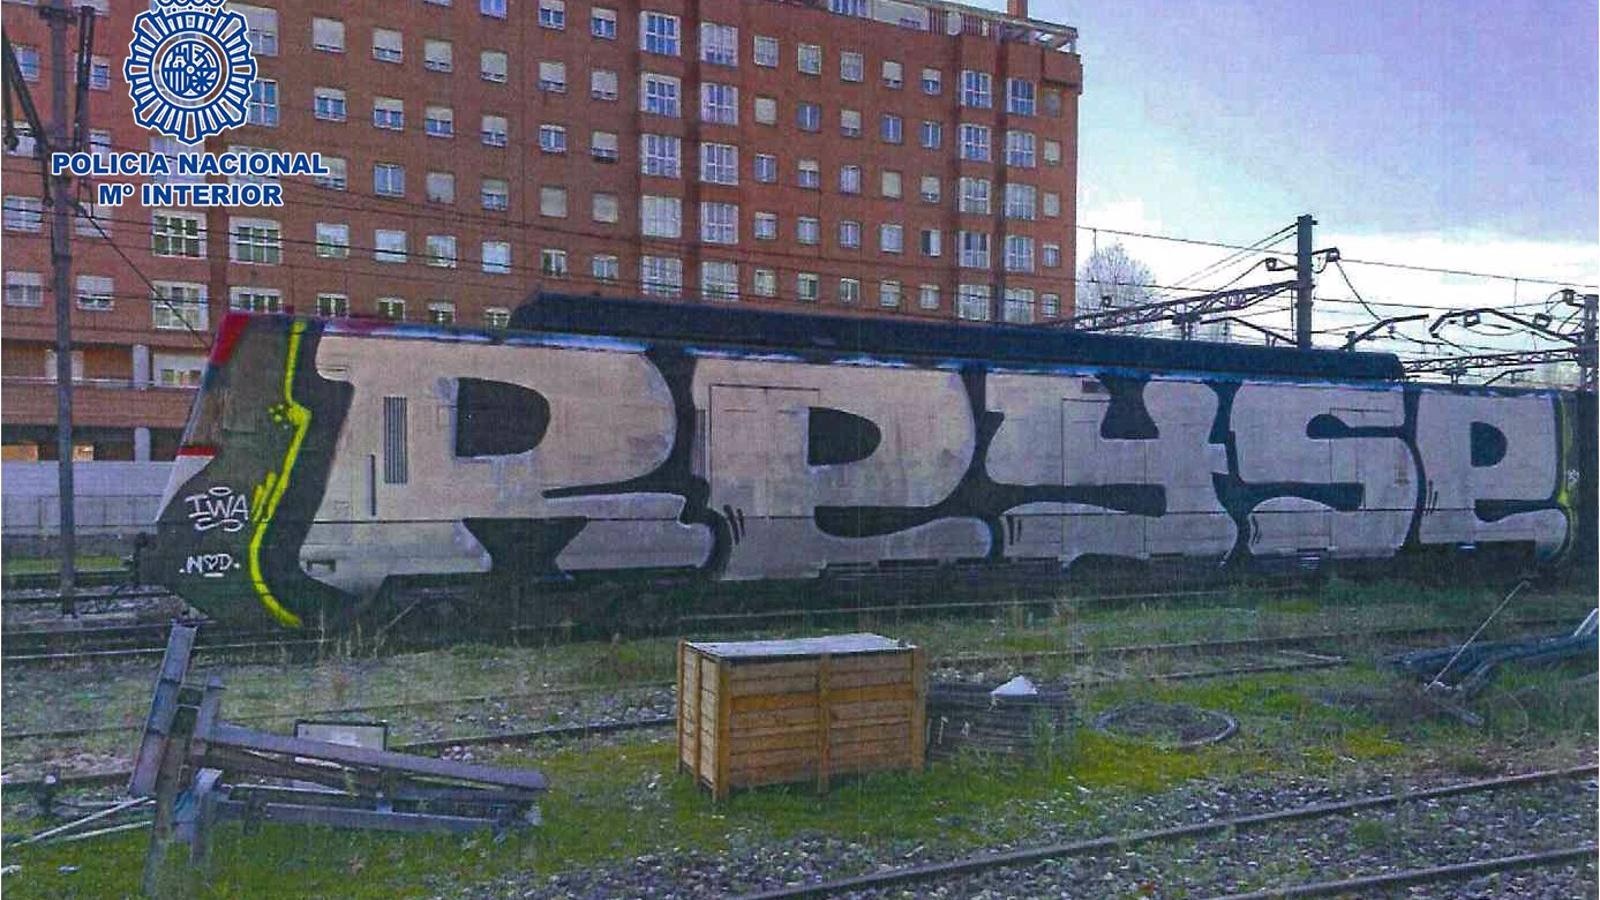 Detenidos 28 grafiteros por realizar pintadas que causaron daños por valor de 600.000€ en vagones de trenes